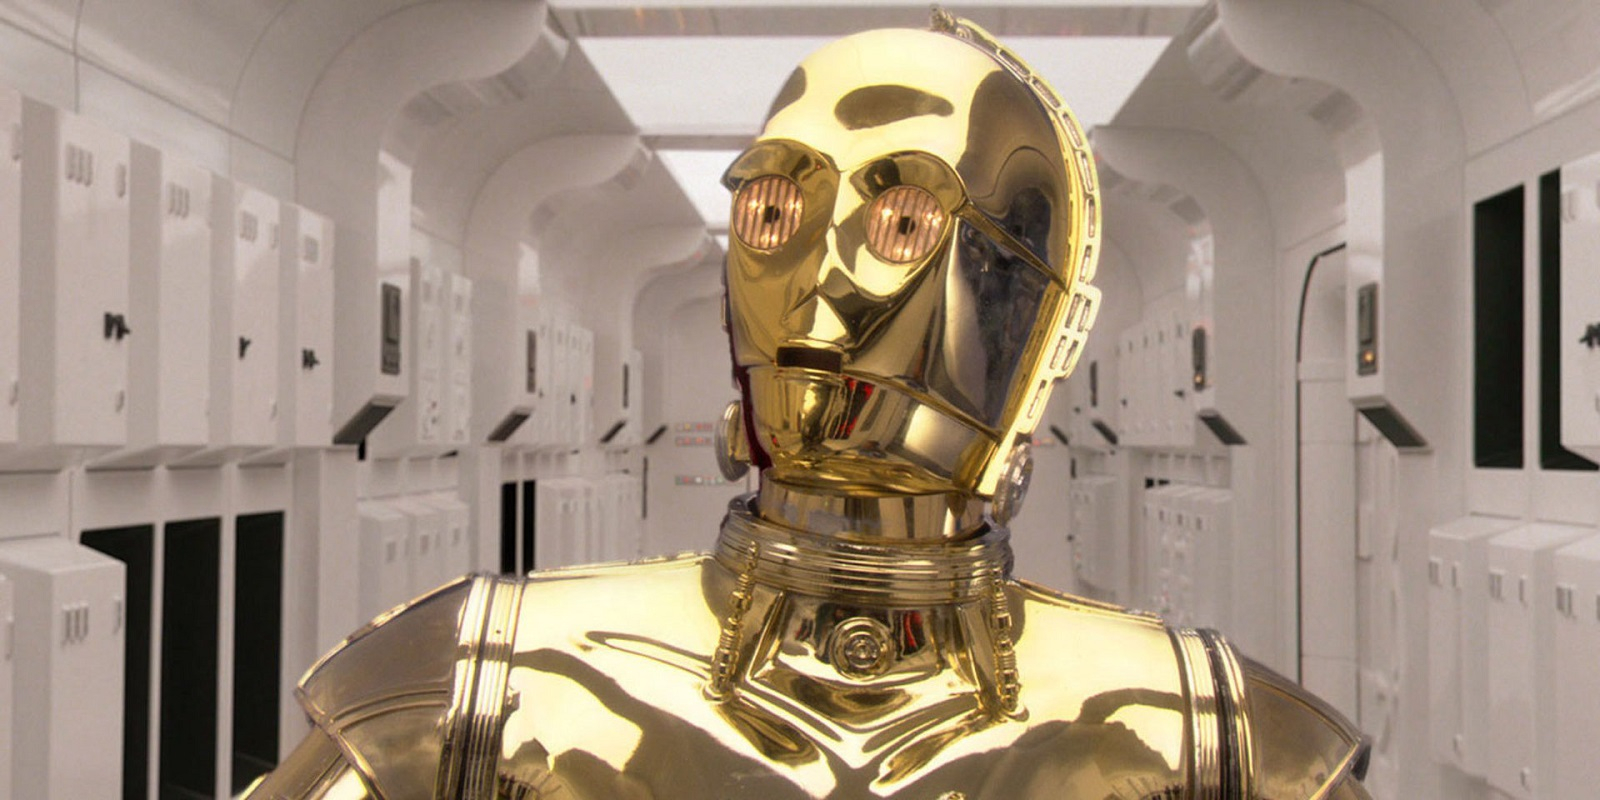 Видео: безобидный дроид из Star Wars Battlefront 2 сошёл с ума и встал на путь войны